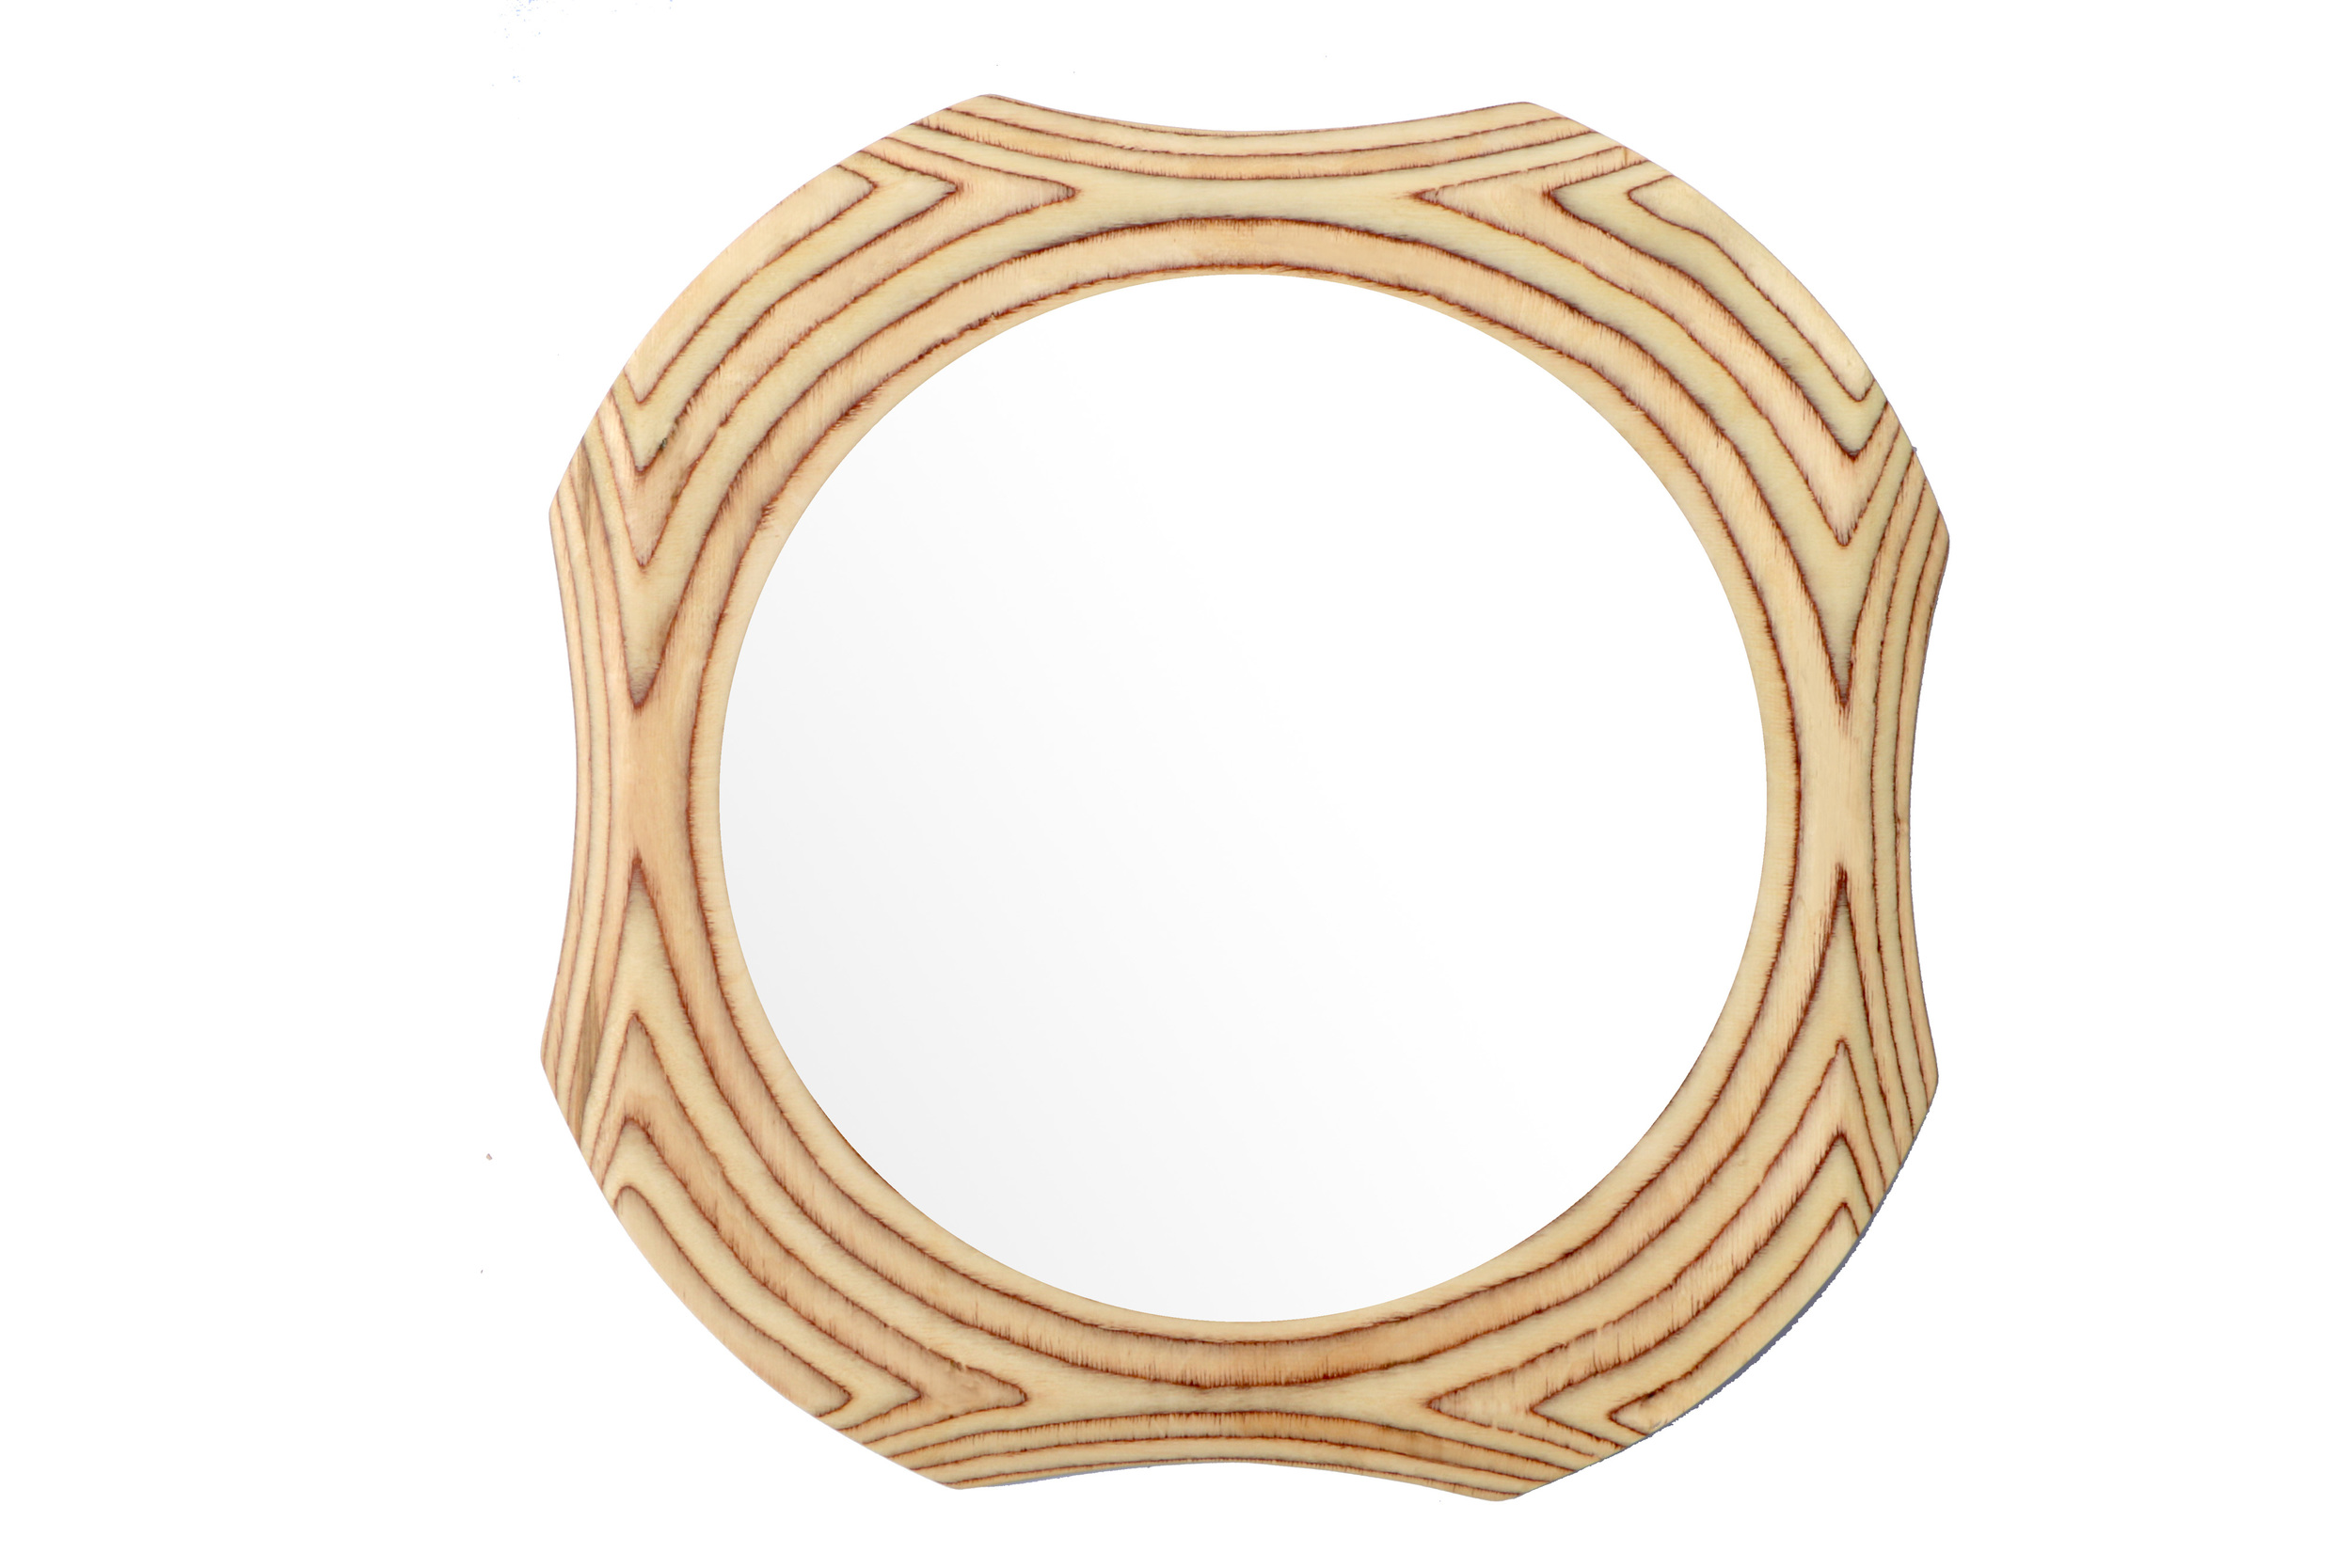 Funky round wooden mirror frame